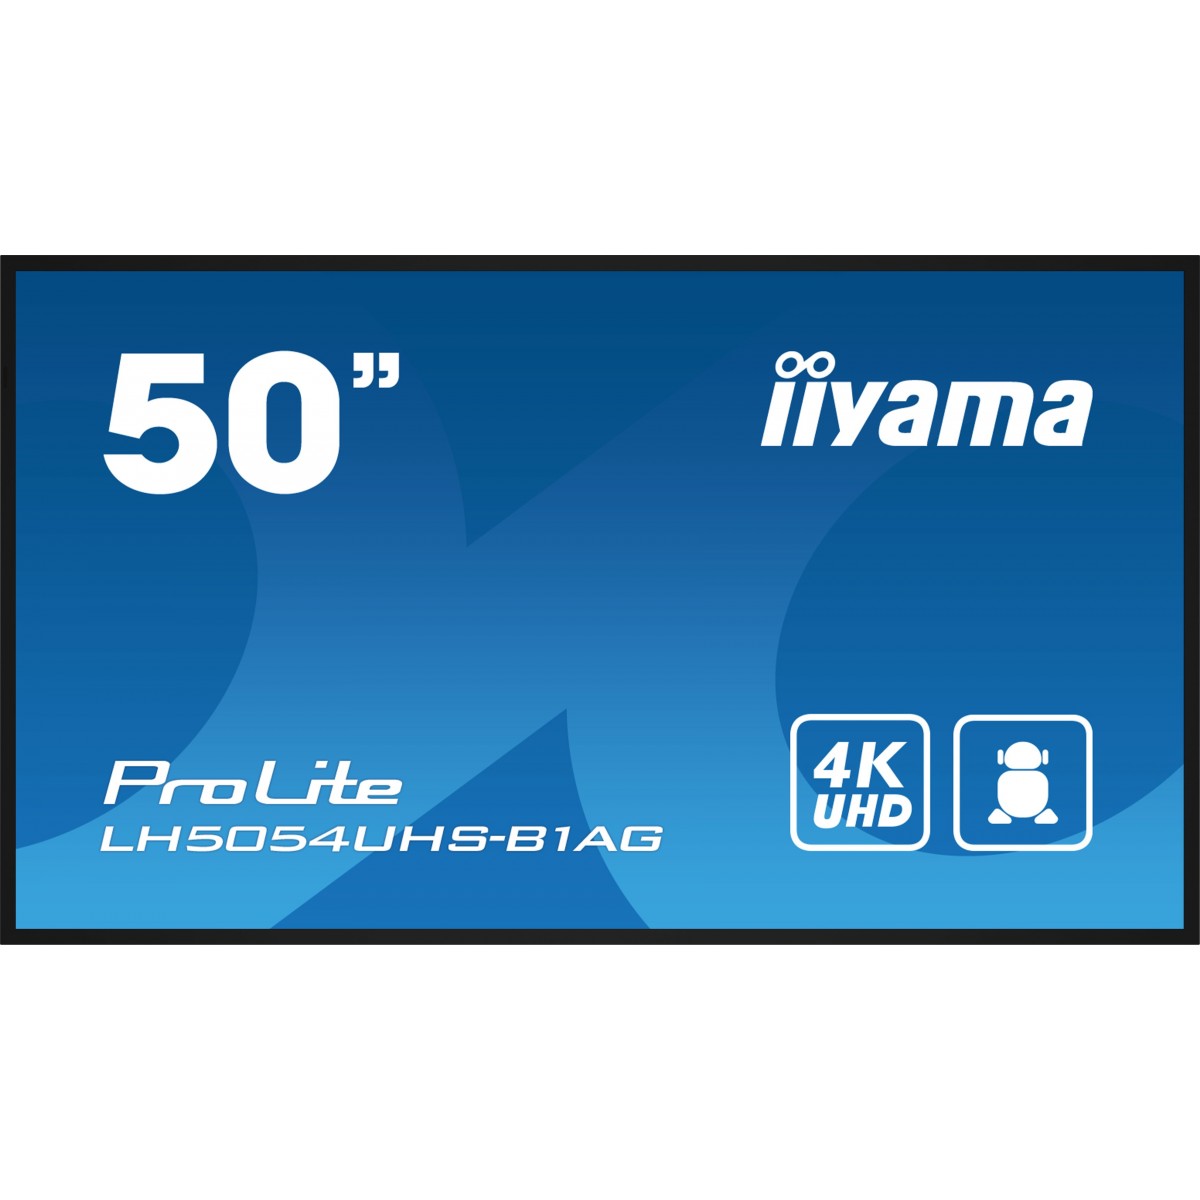 Iiyama 50 IN 3840X2160 4K UHD IPS - Flat Screen - IPS